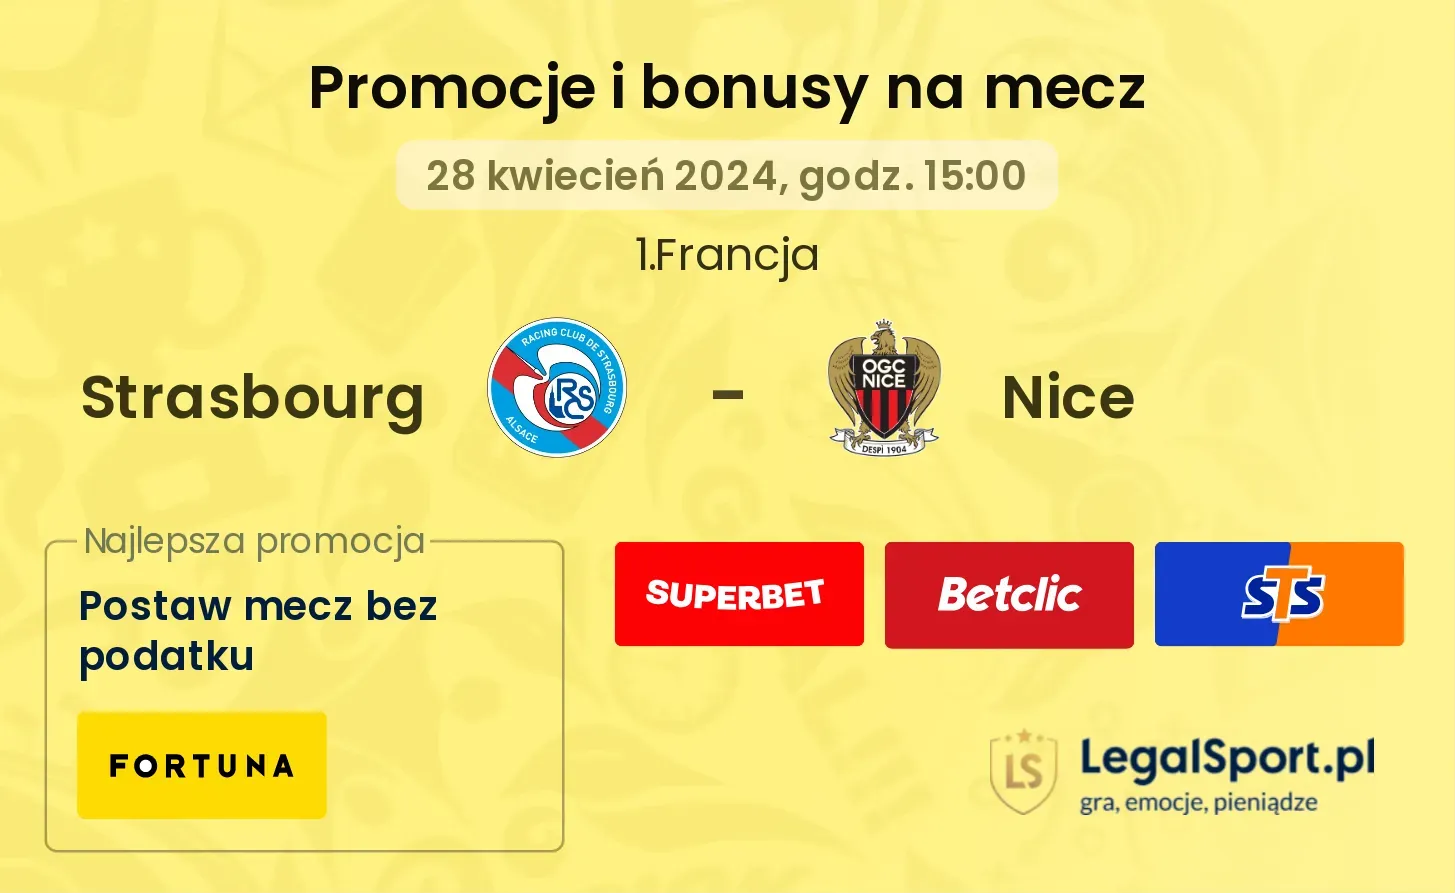 Strasbourg - Nice promocje bonusy na mecz